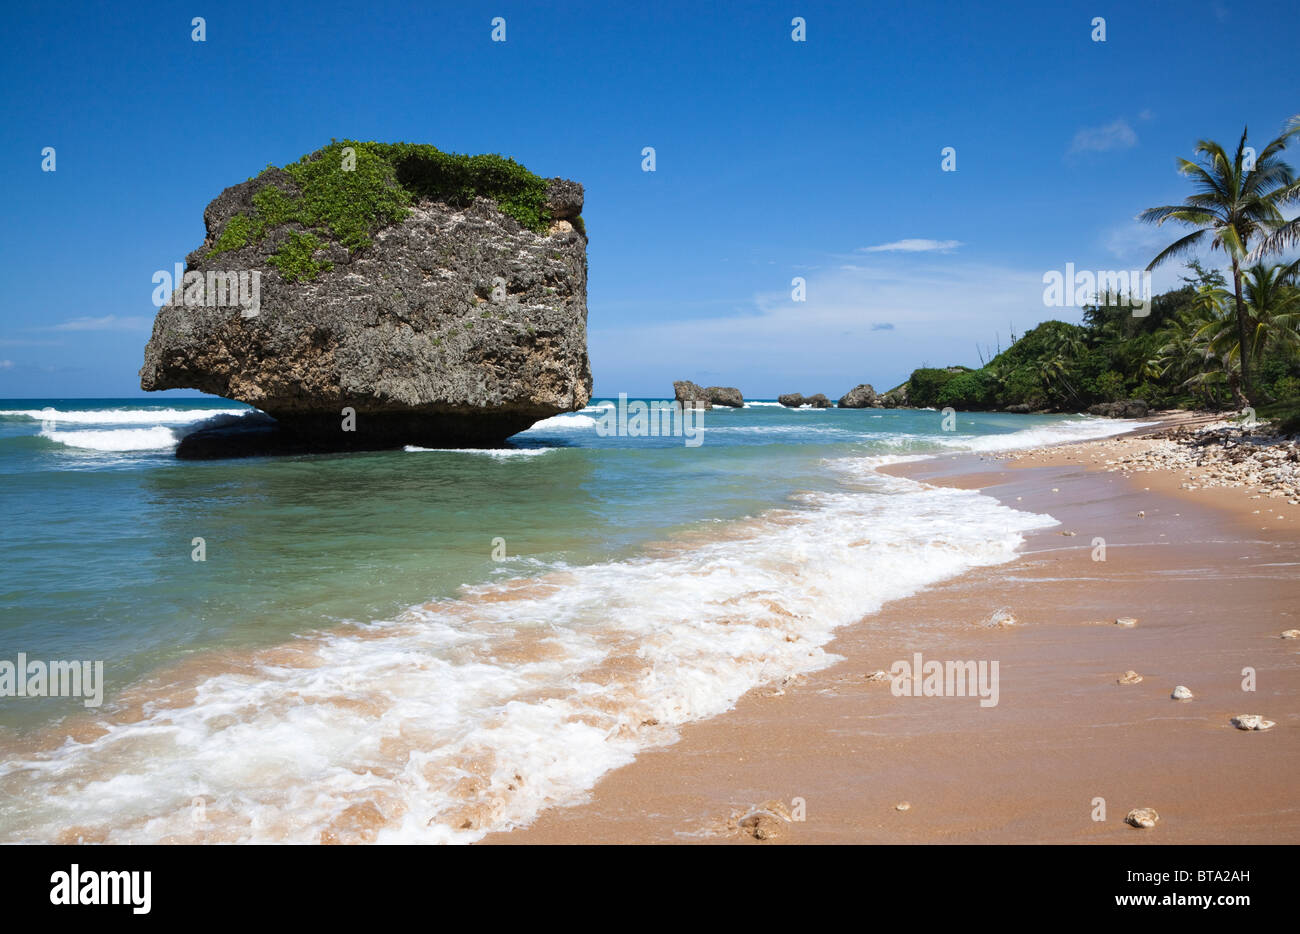 Roccia del fungo, Betsabea, Barbados, West Indies. La roccia è famosa per l'erosione sulla sua base creando la forma inusuale. Foto Stock